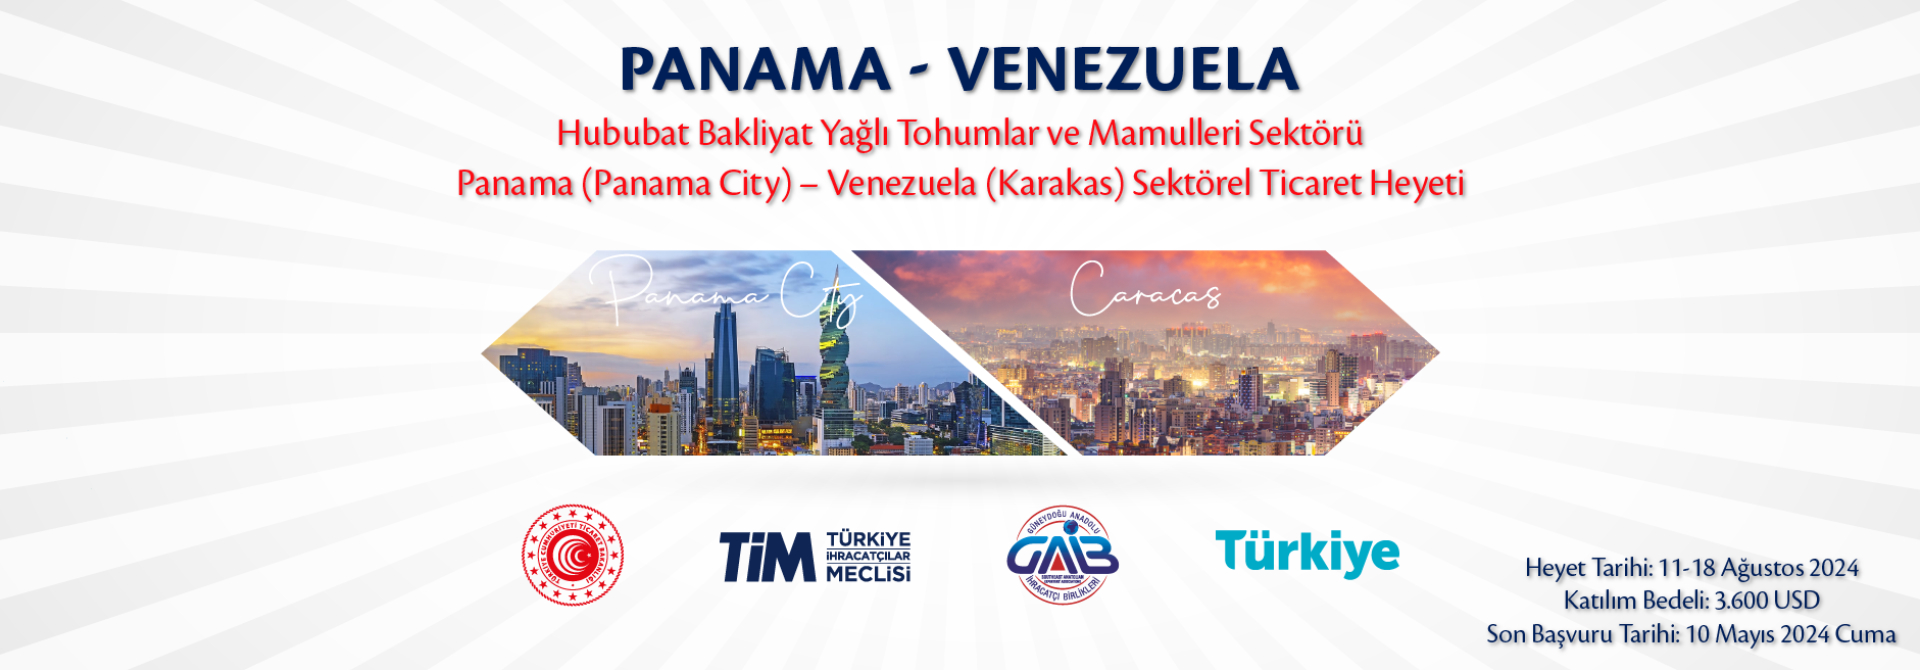 Panama-Venezuela Sektörel Ticaret Heyeti